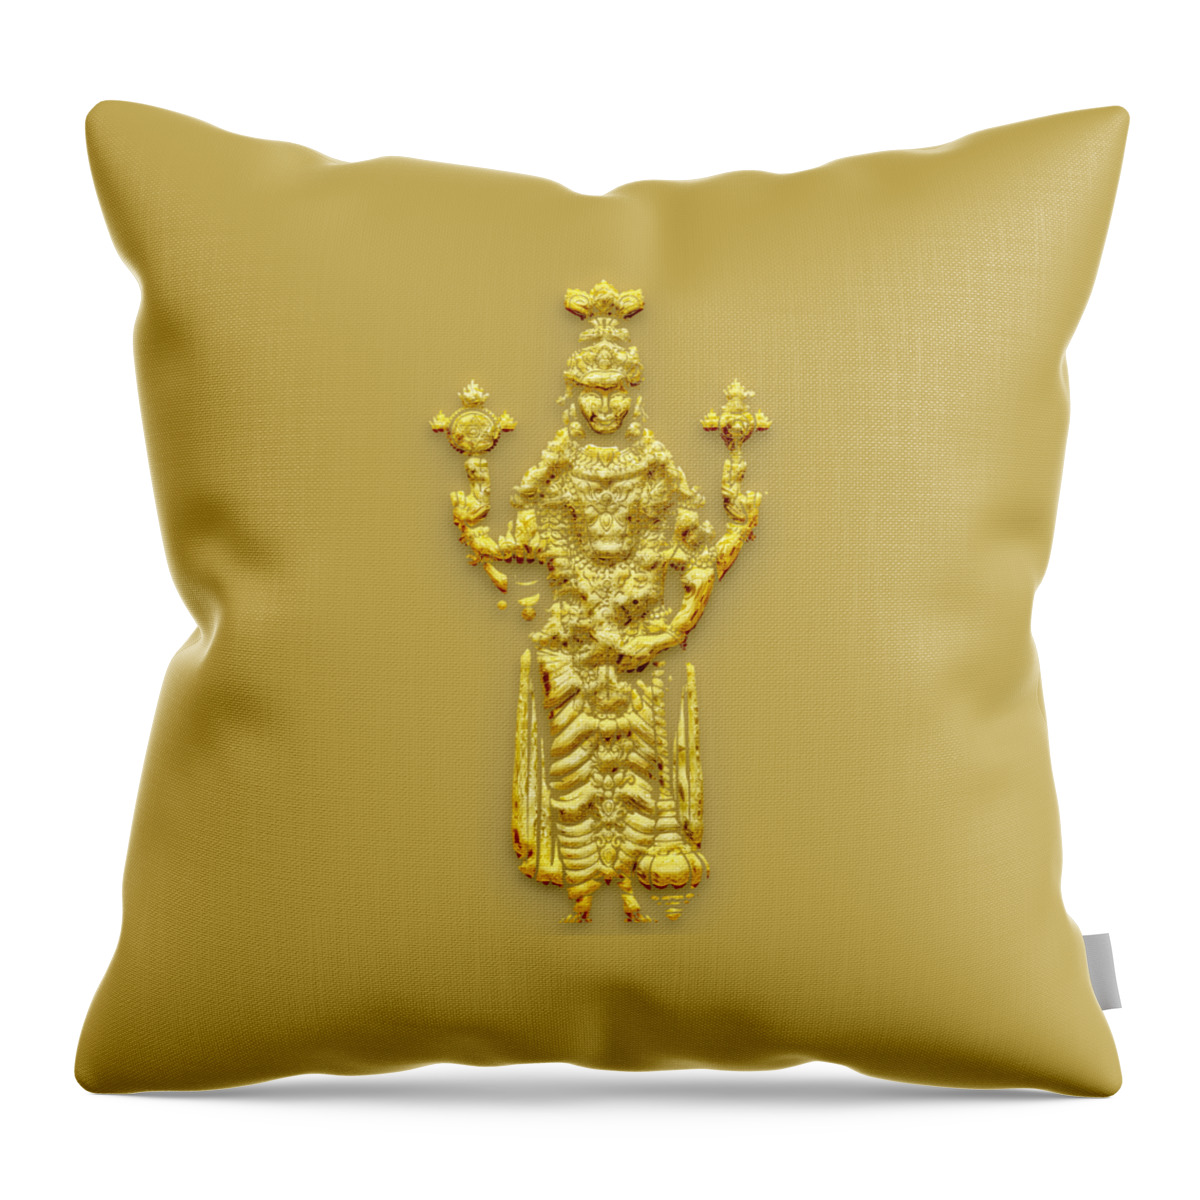 3d Throw Pillow featuring the painting lord vishnu Hindu god golden art by Kartick Dutta